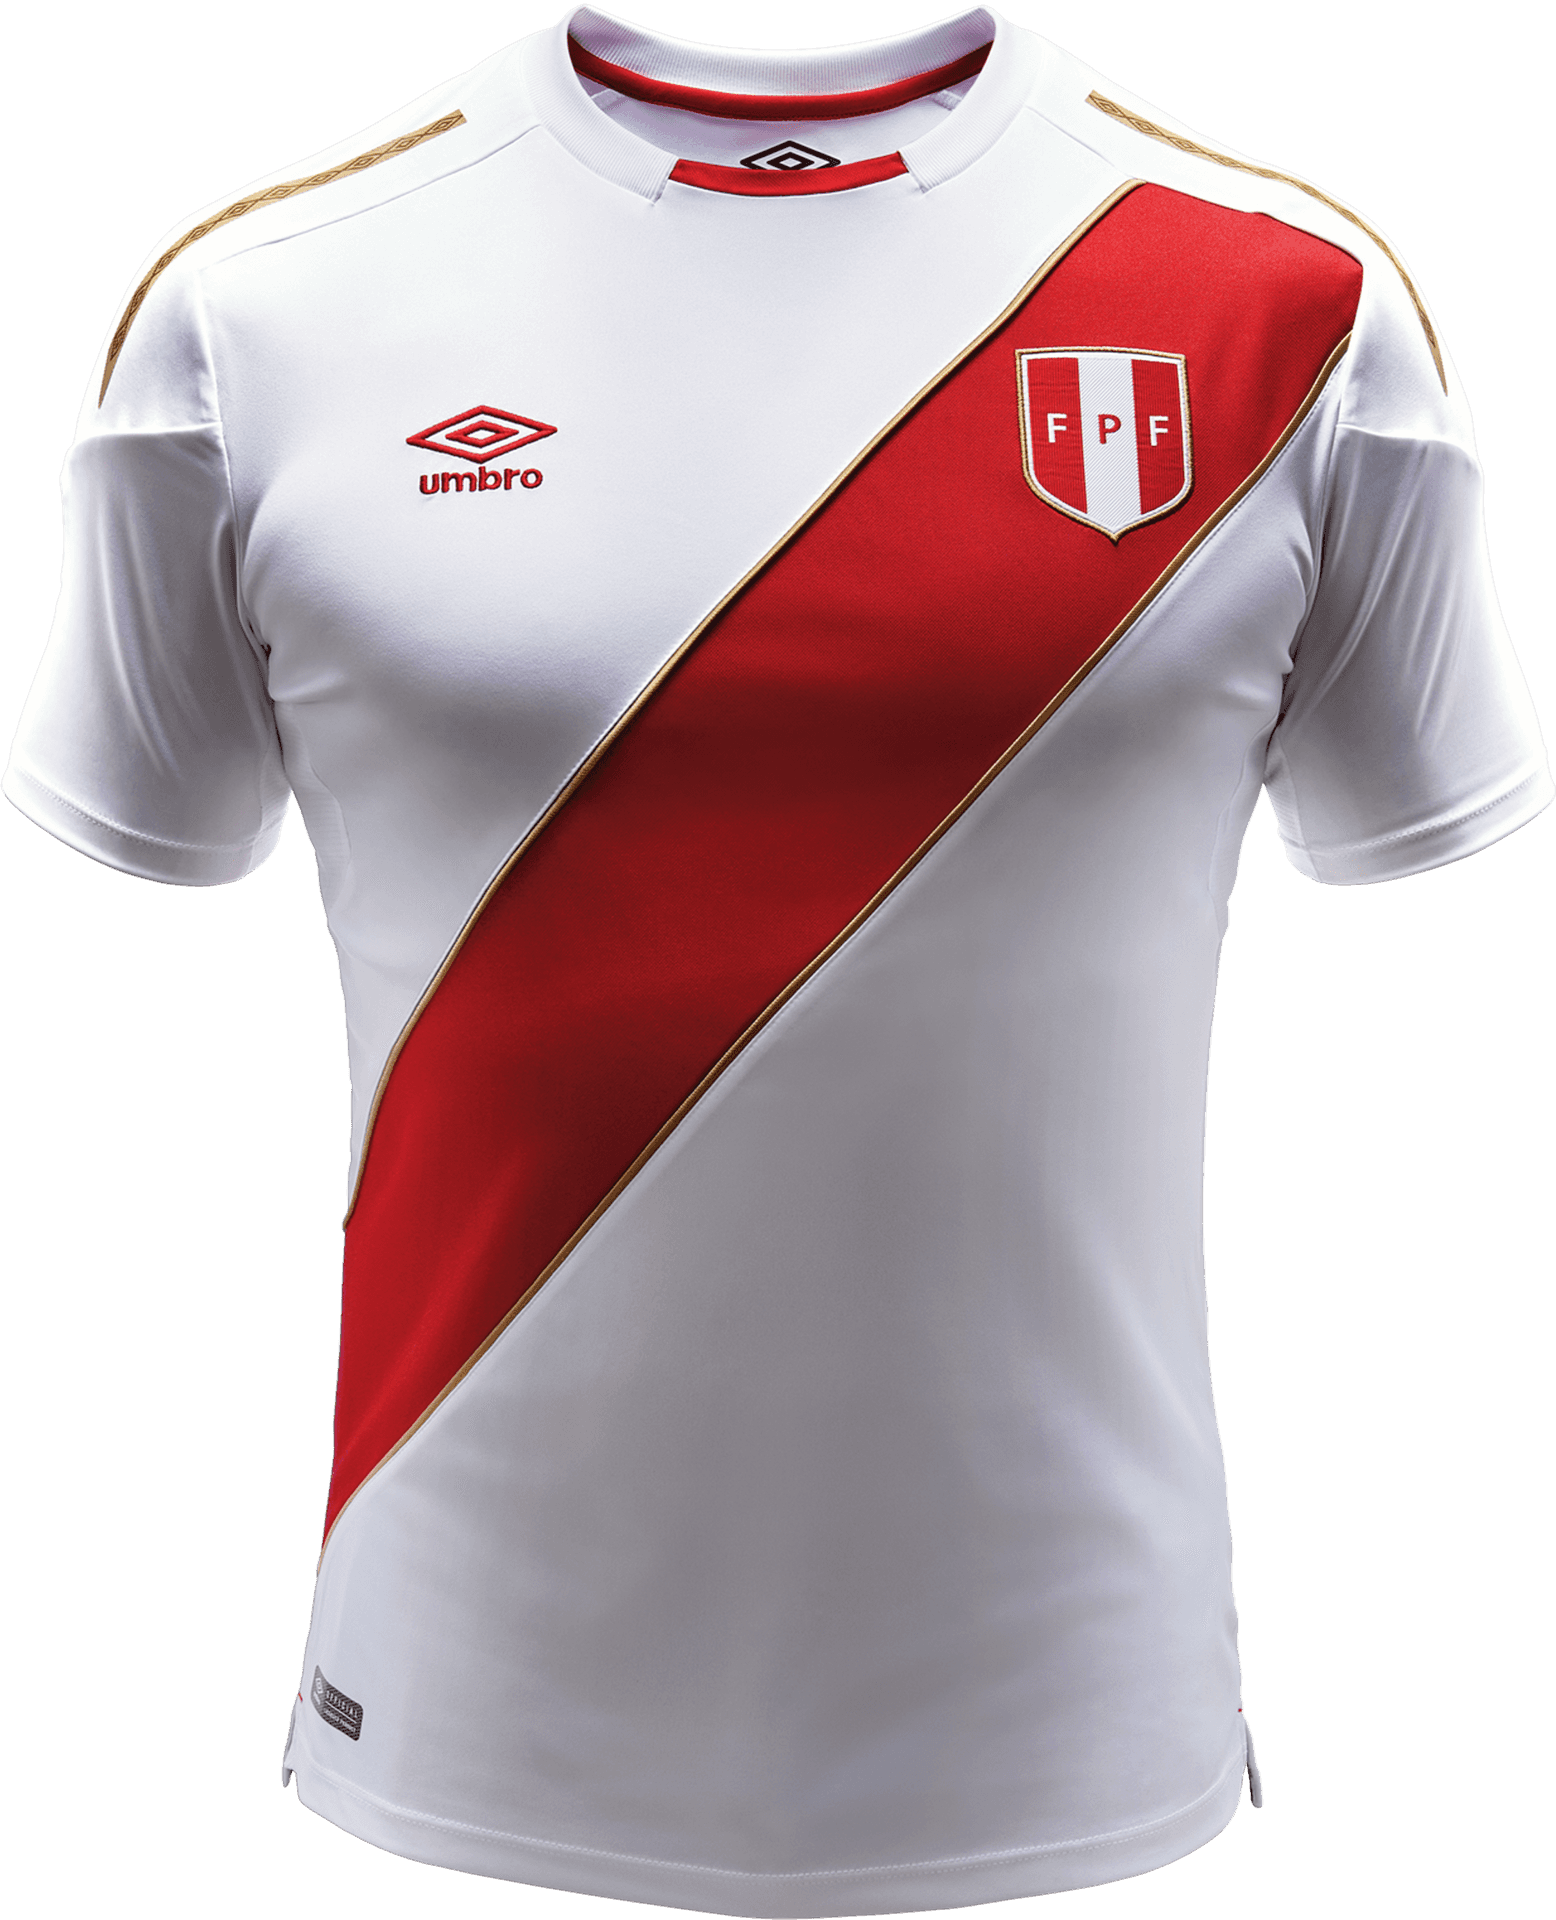 Peru National Football Team Jersey PNG